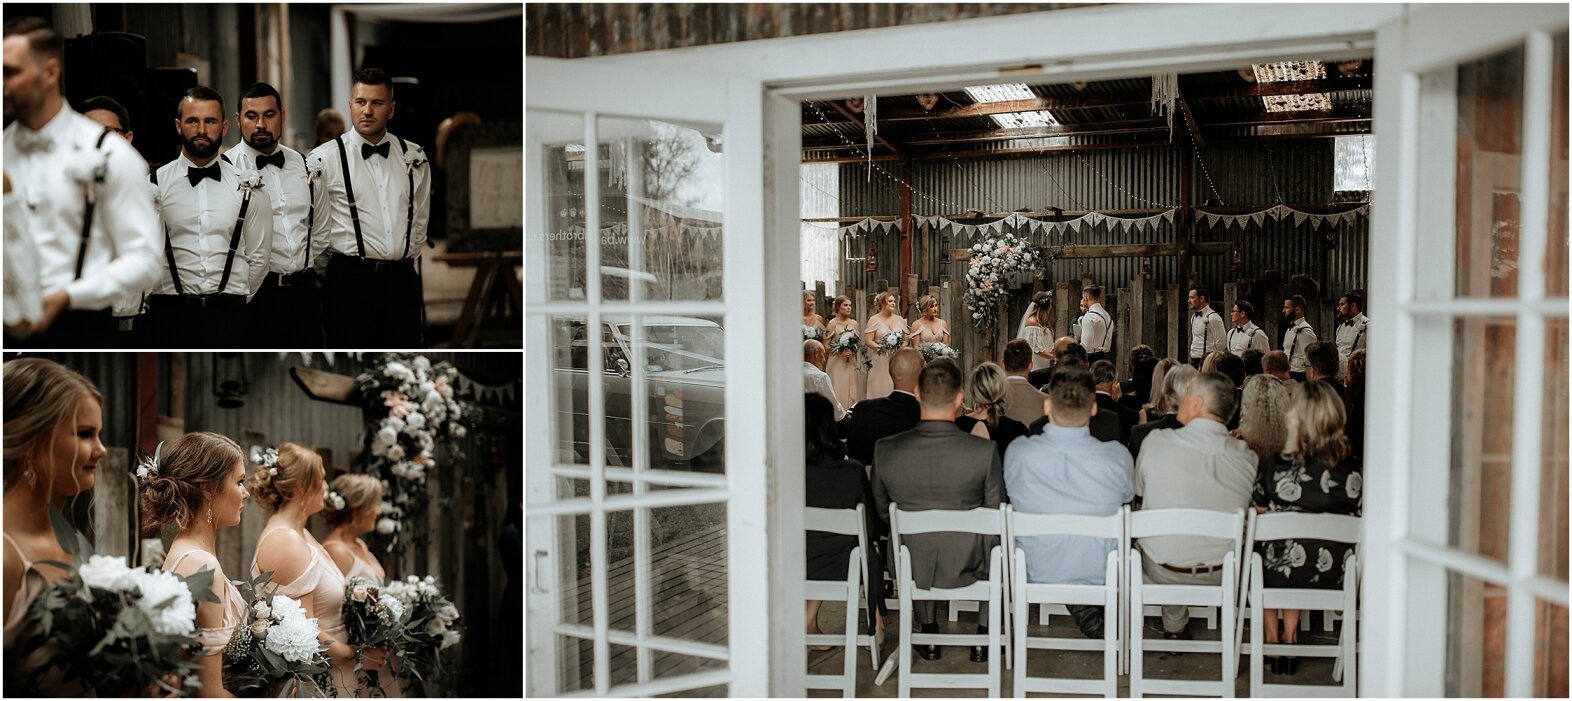 Zanda+Auckland+wedding+photographer+boho+vintage+lace+retro+The+barn+Waimauku+venue+New+Zealand_30.jpeg